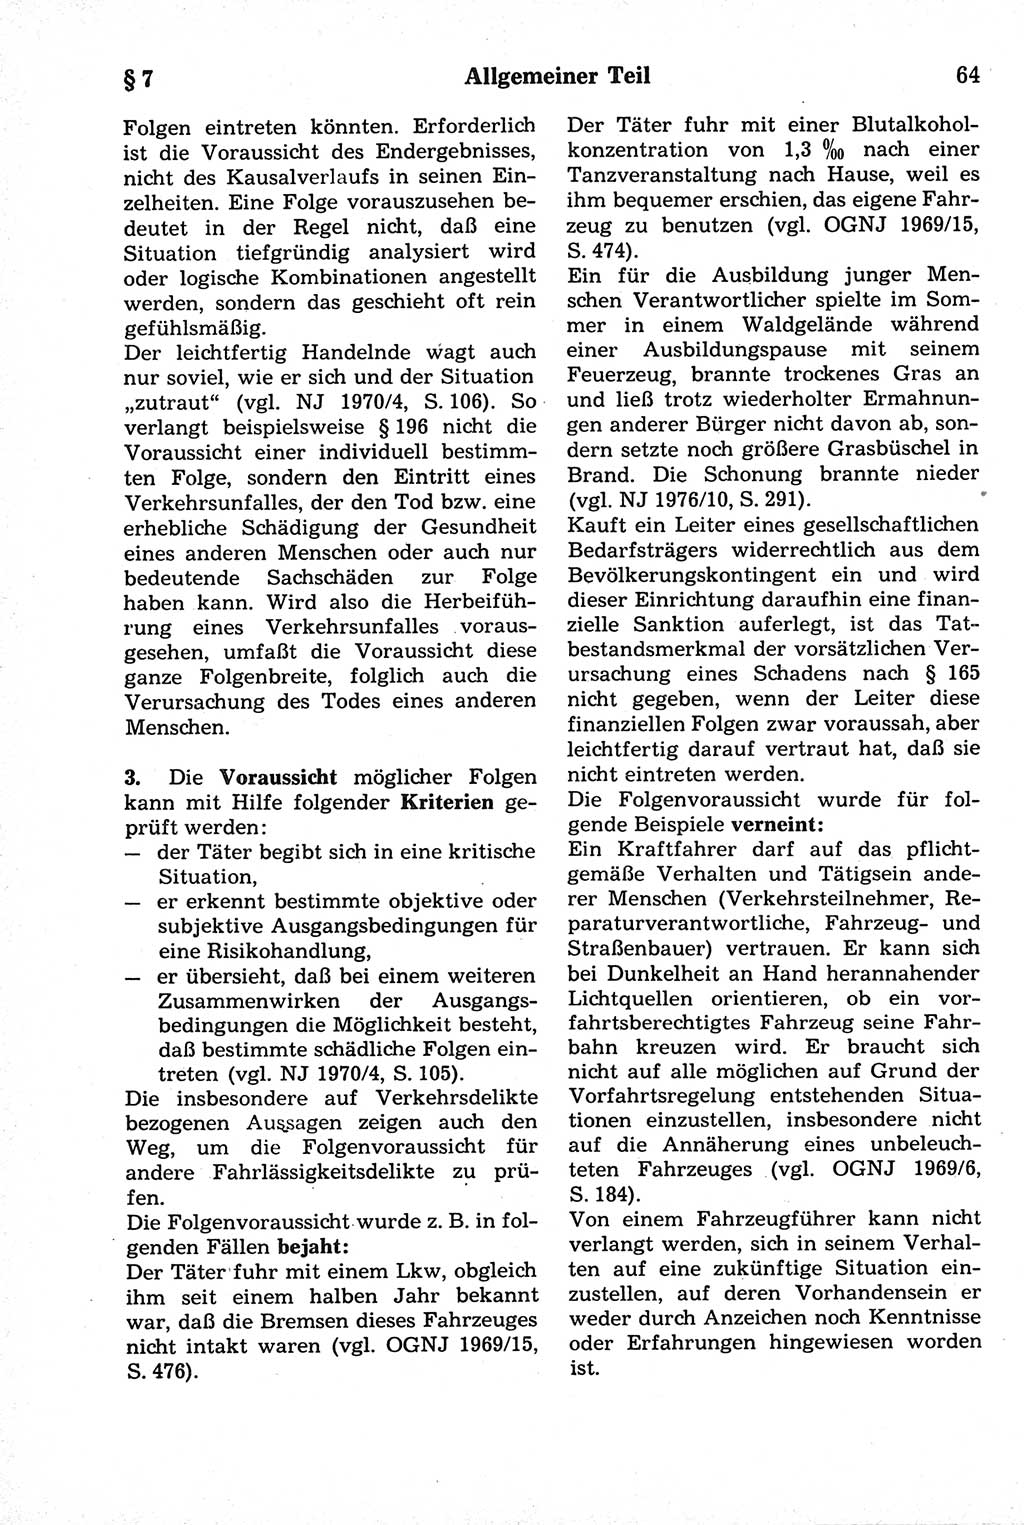 Strafrecht der Deutschen Demokratischen Republik (DDR), Kommentar zum Strafgesetzbuch (StGB) 1981, Seite 64 (Strafr. DDR Komm. StGB 1981, S. 64)